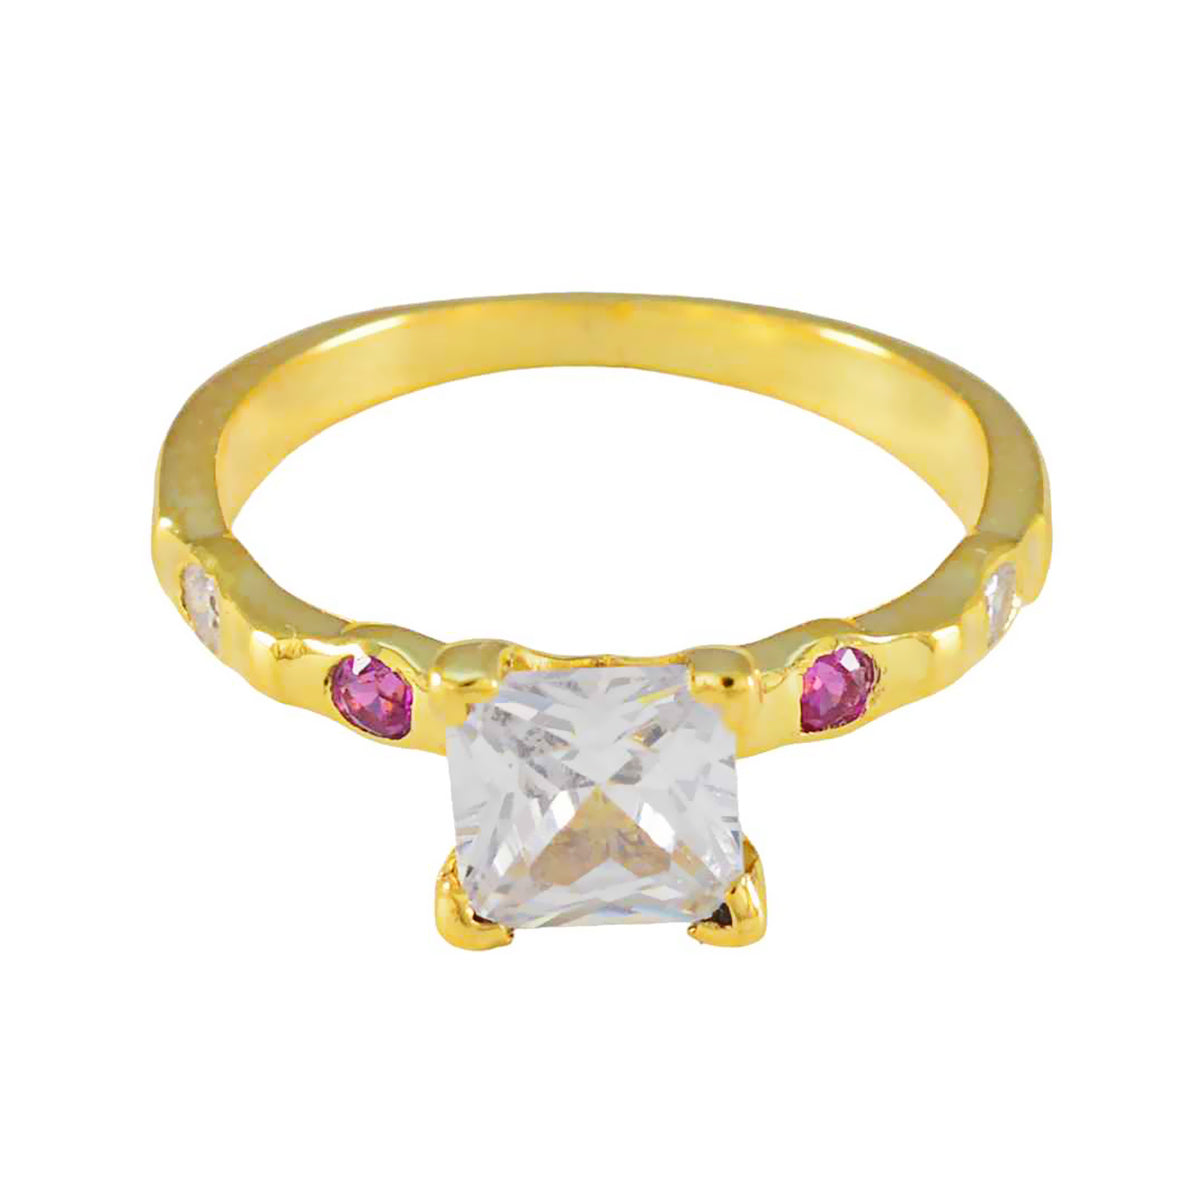 Riyo поставляет серебряное кольцо с покрытием из желтого золота, рубин и камень квадратной формы, закрепка зубца, модные украшения, обручальное кольцо